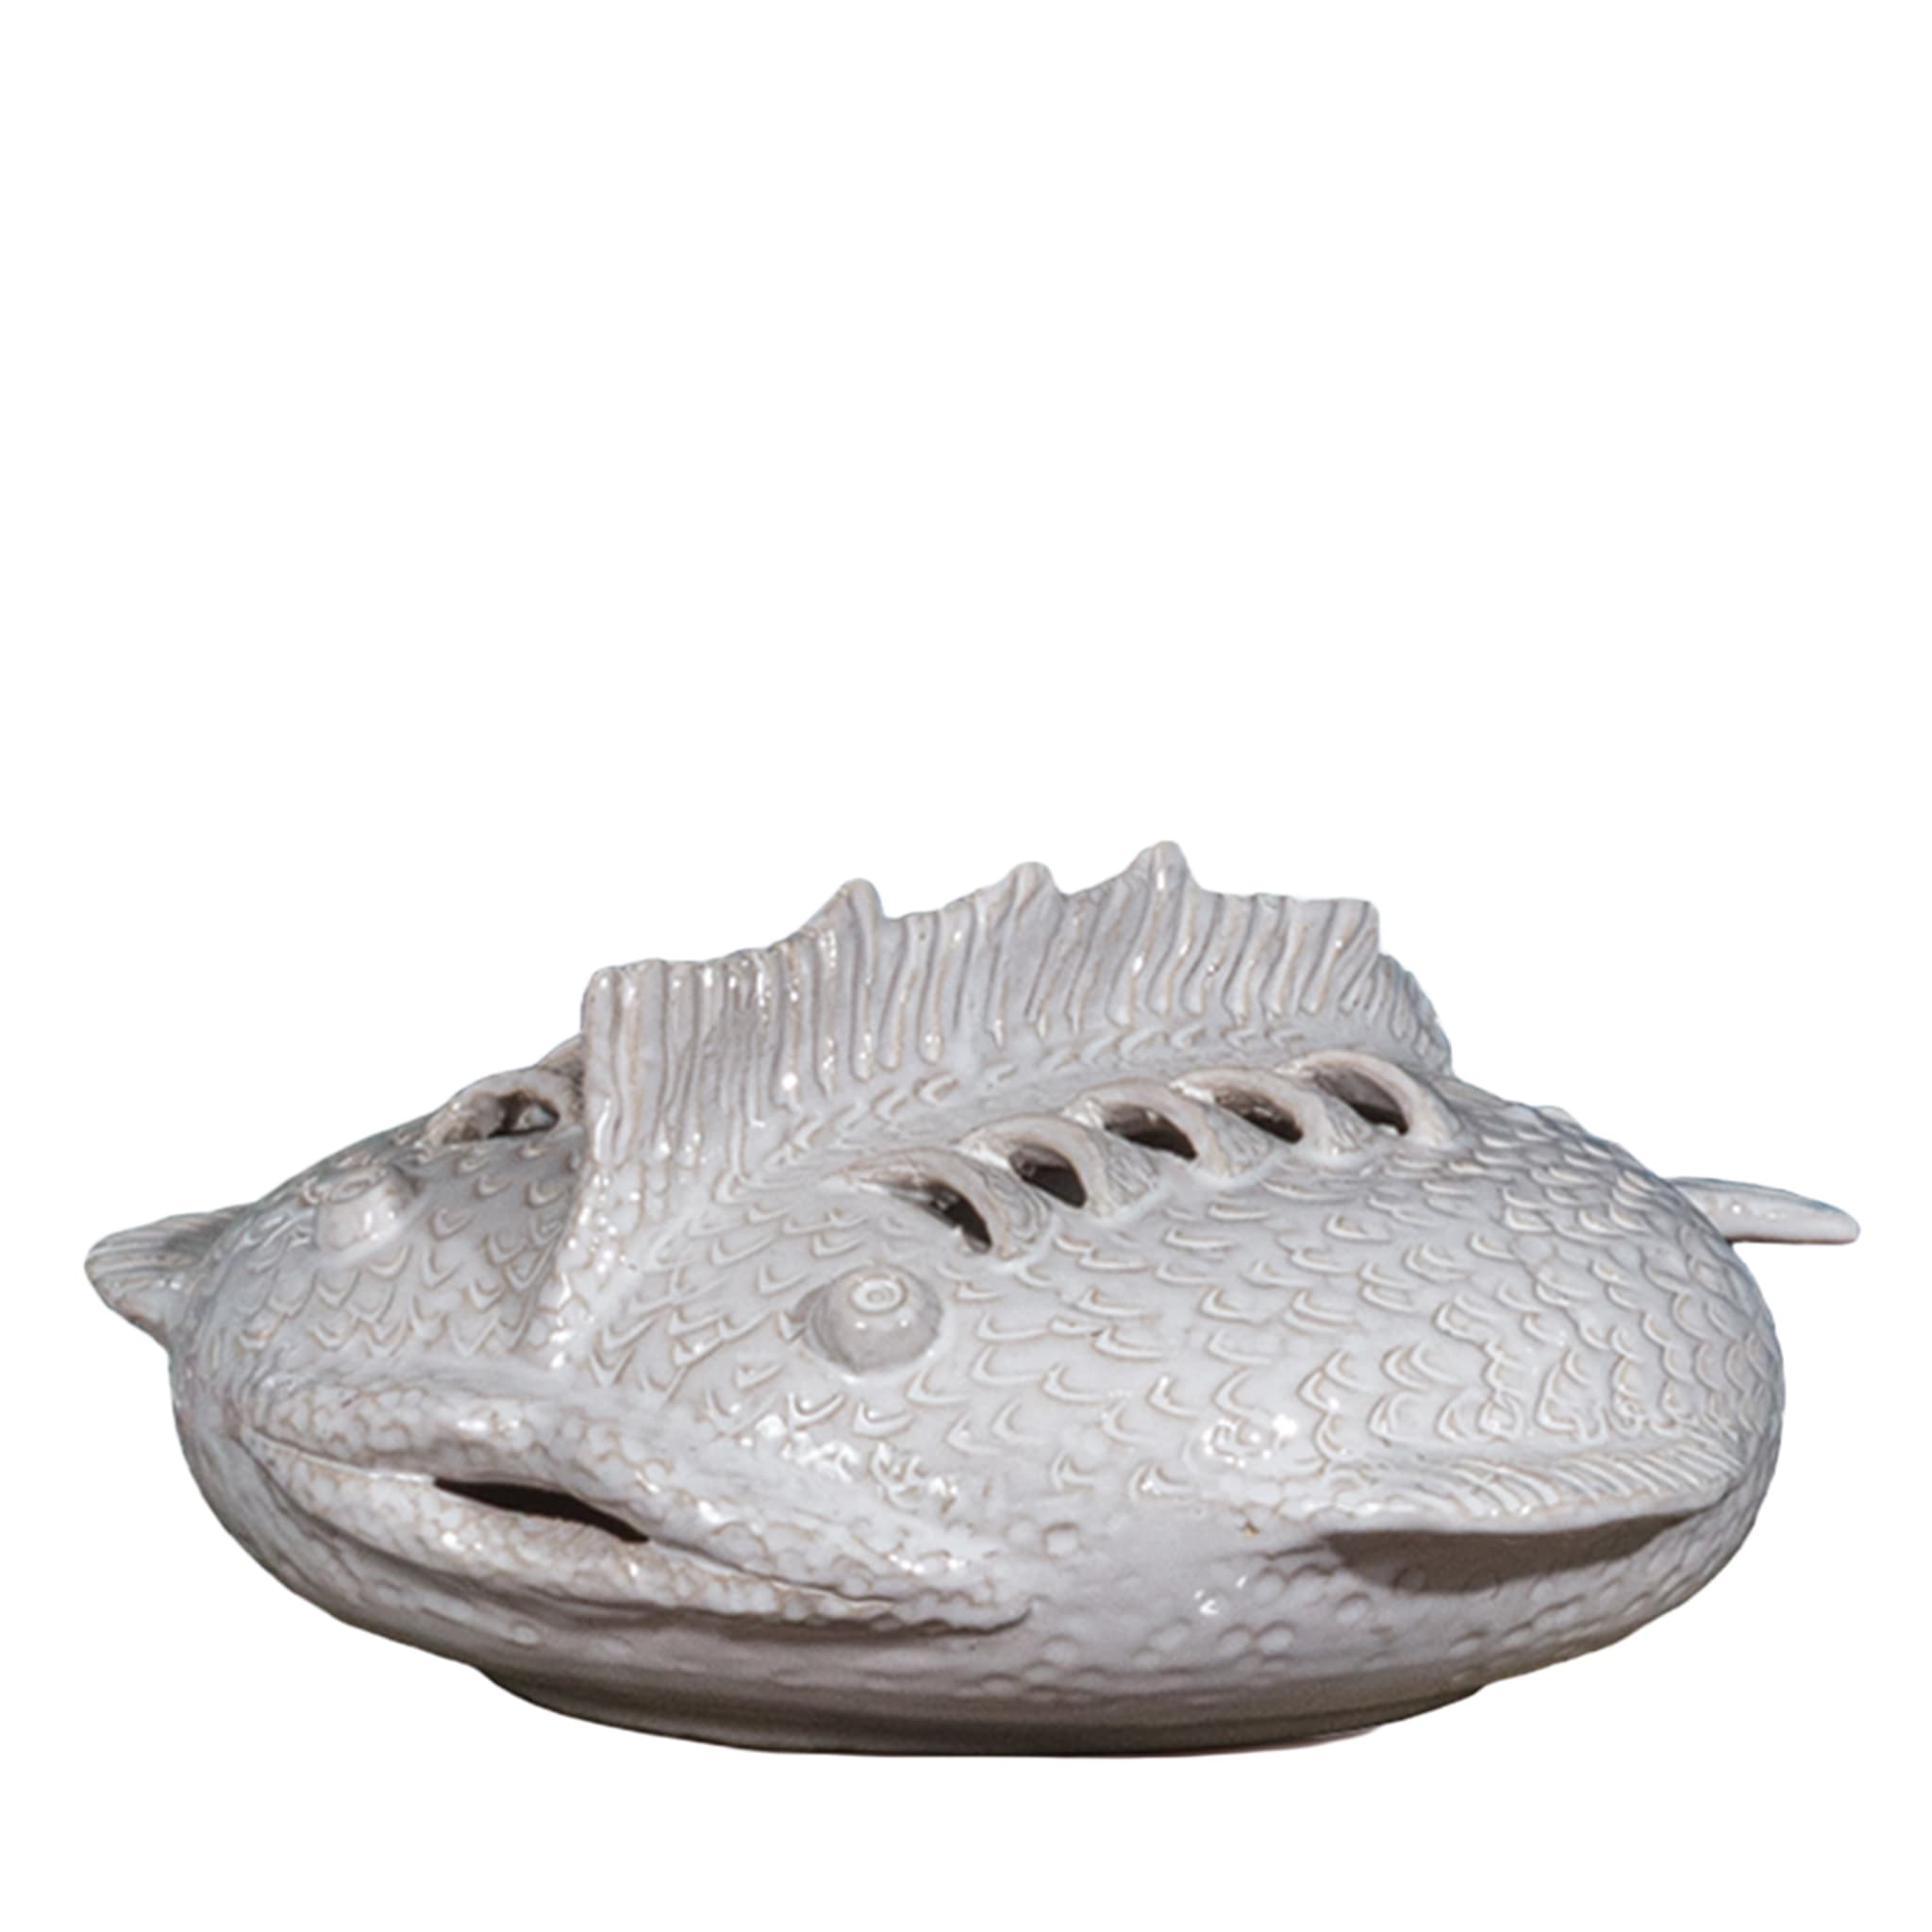 Perle Marine Pesce Razza White Sculpture #3 - Vue principale